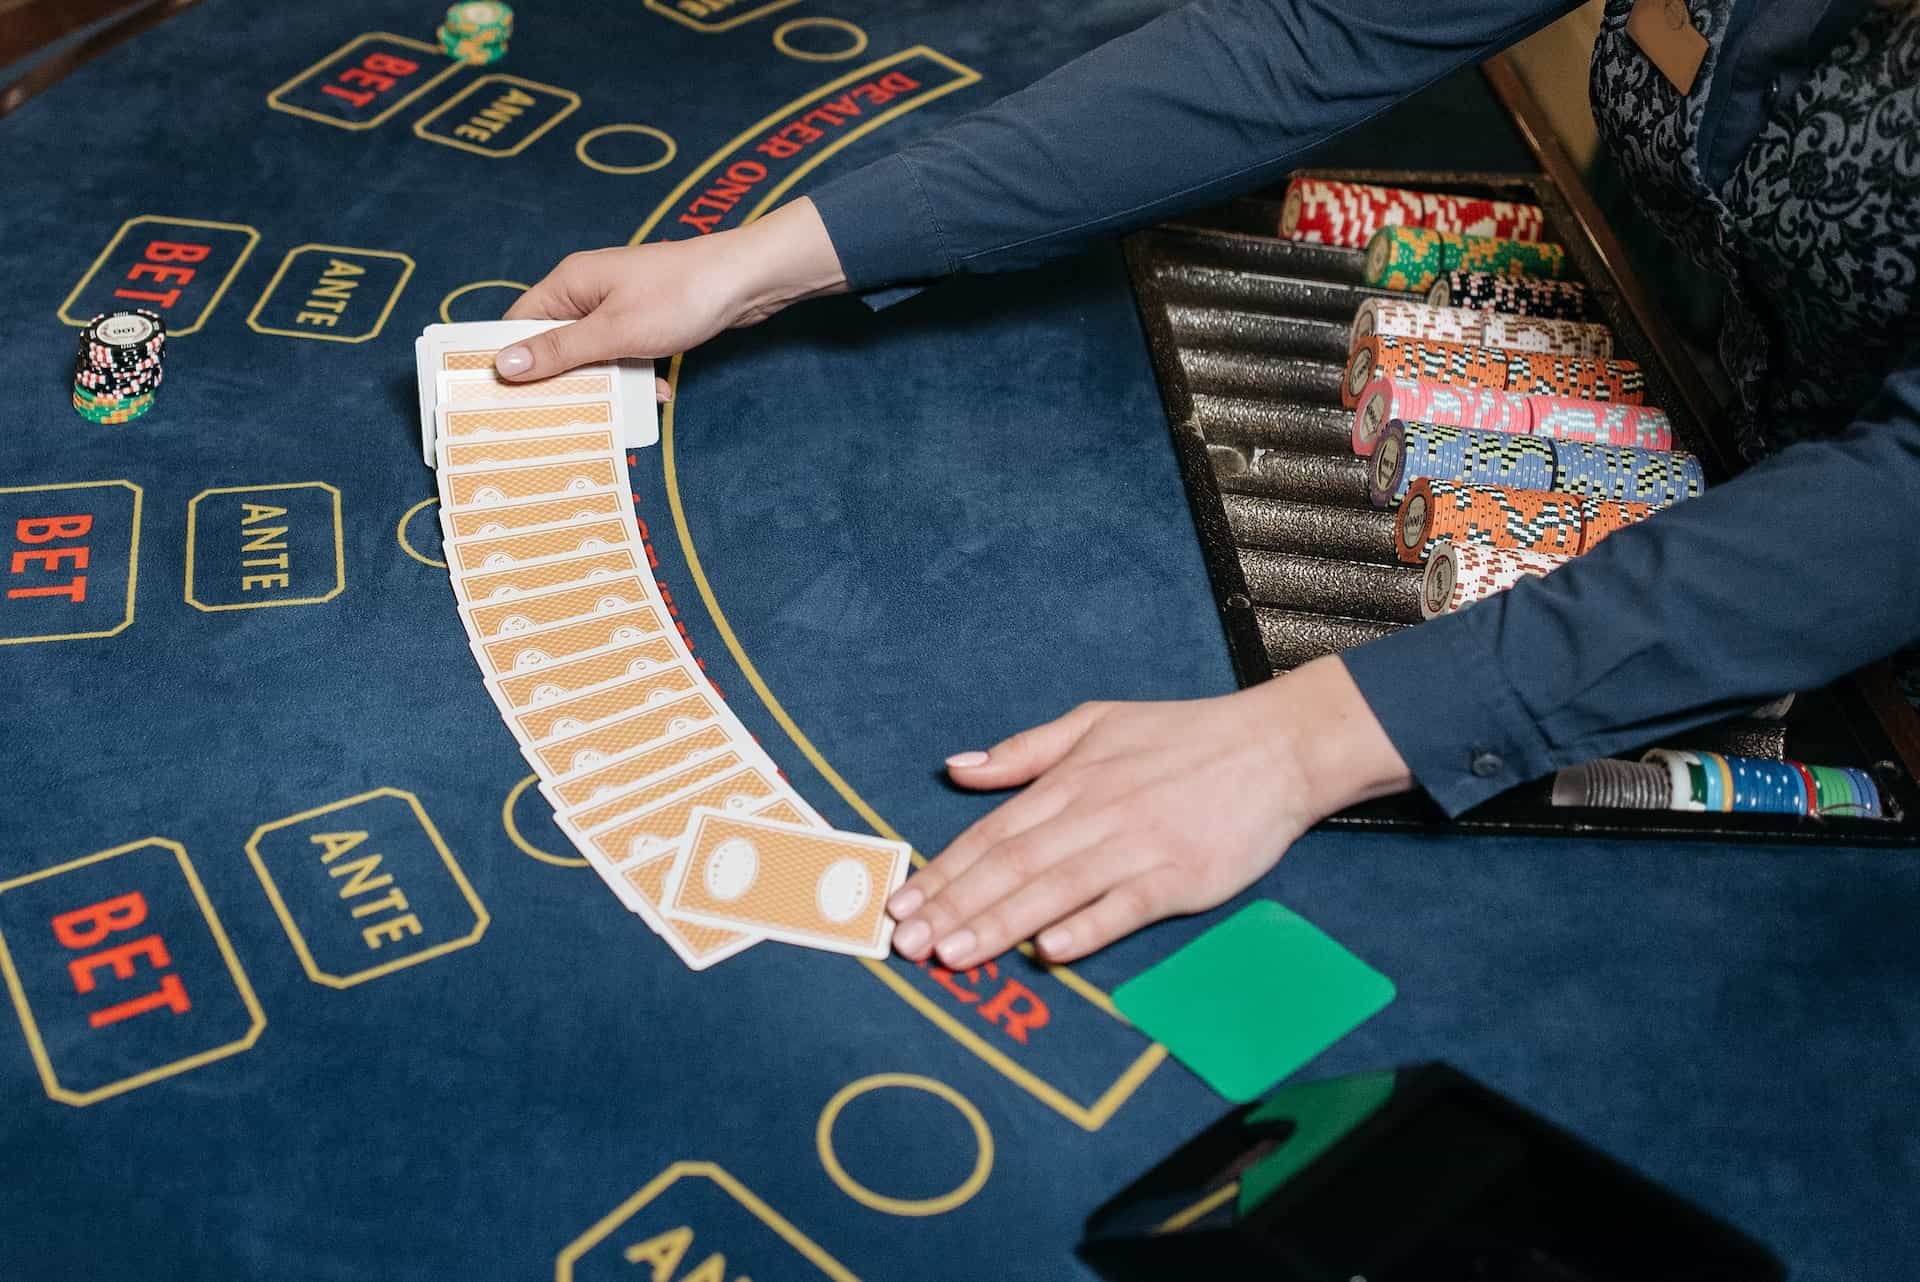 Dealer kasino menyebarkan kartu di atas meja judi